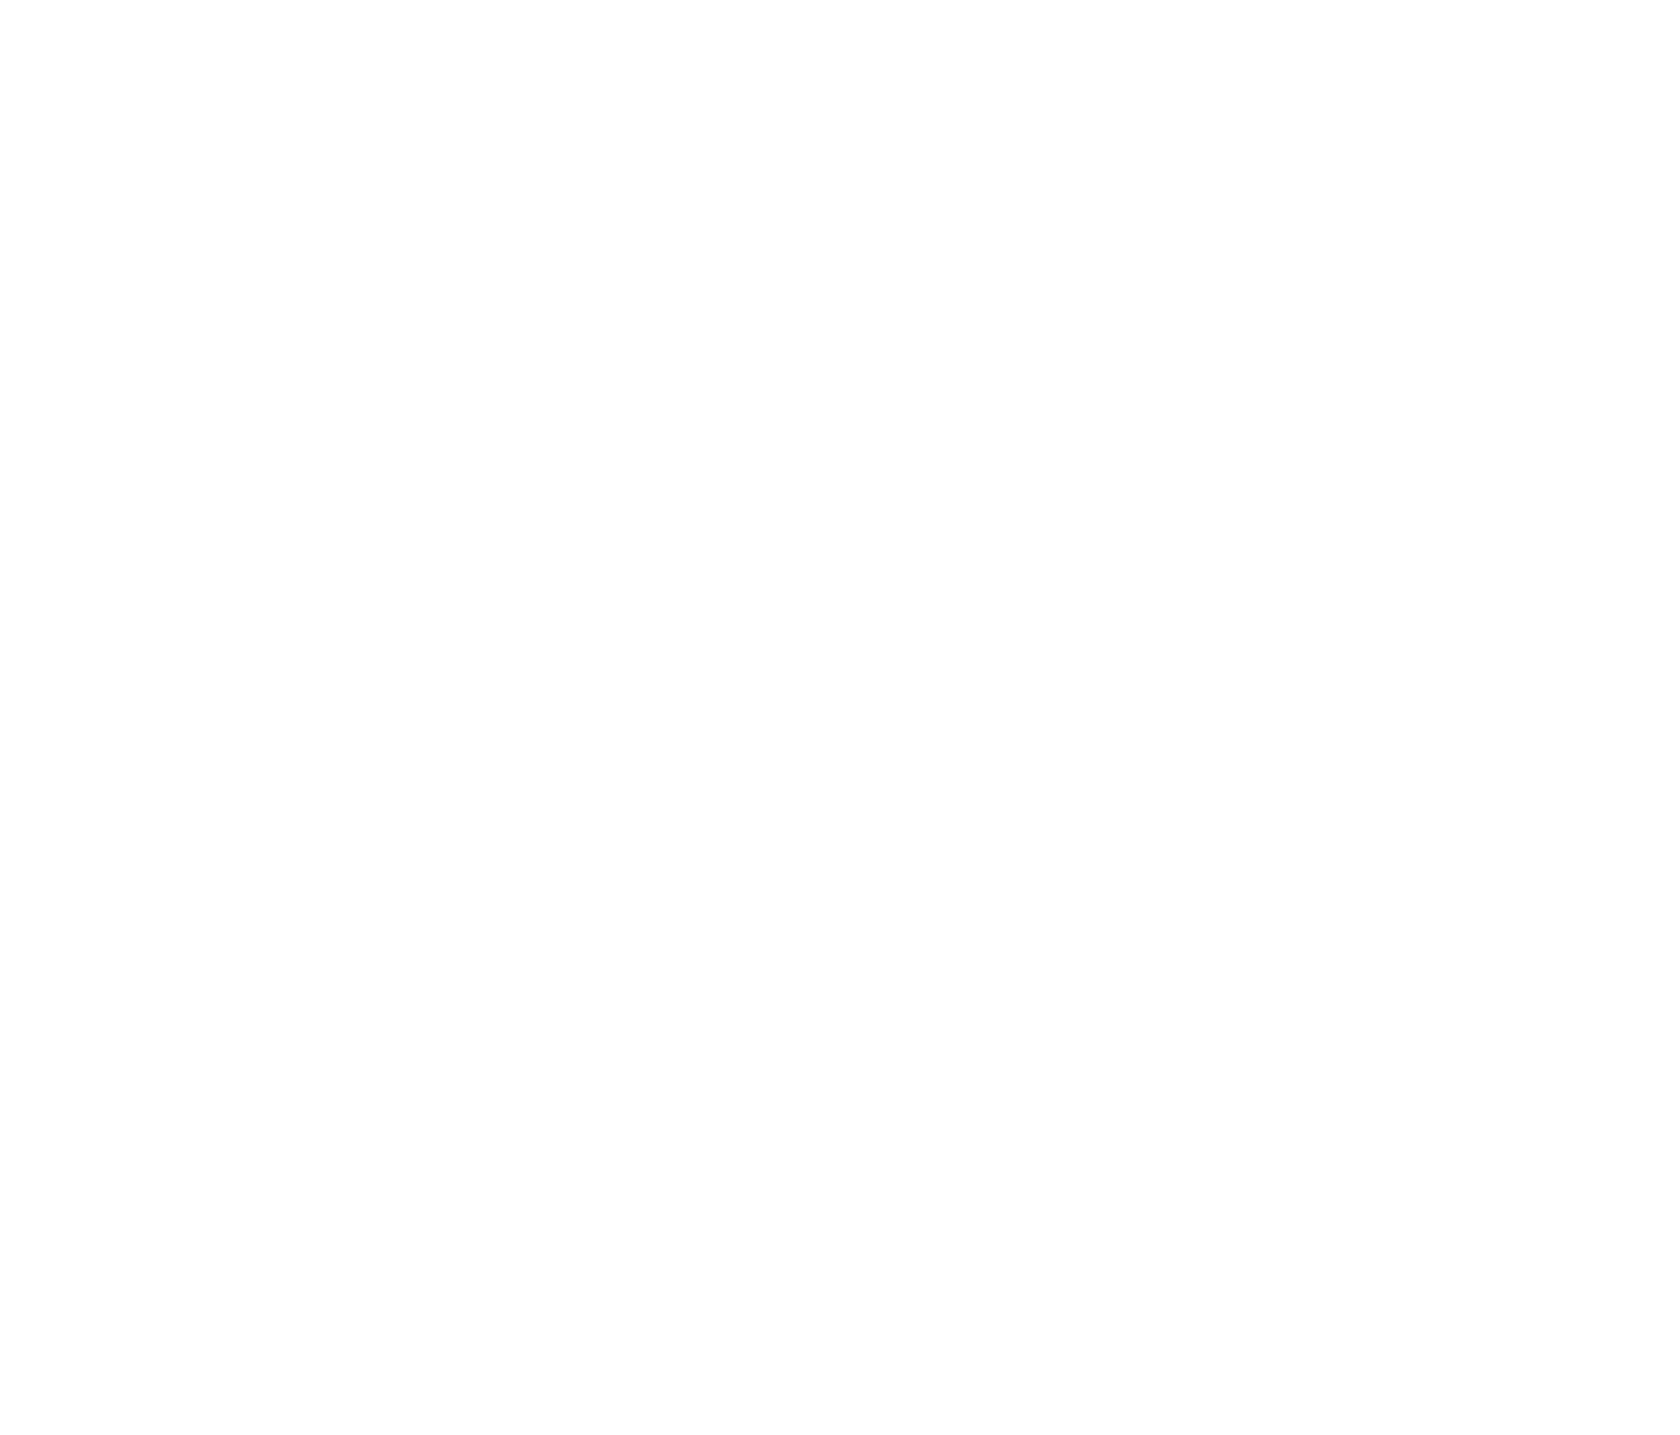 Pulmonx logo for dark backgrounds (transparent PNG)